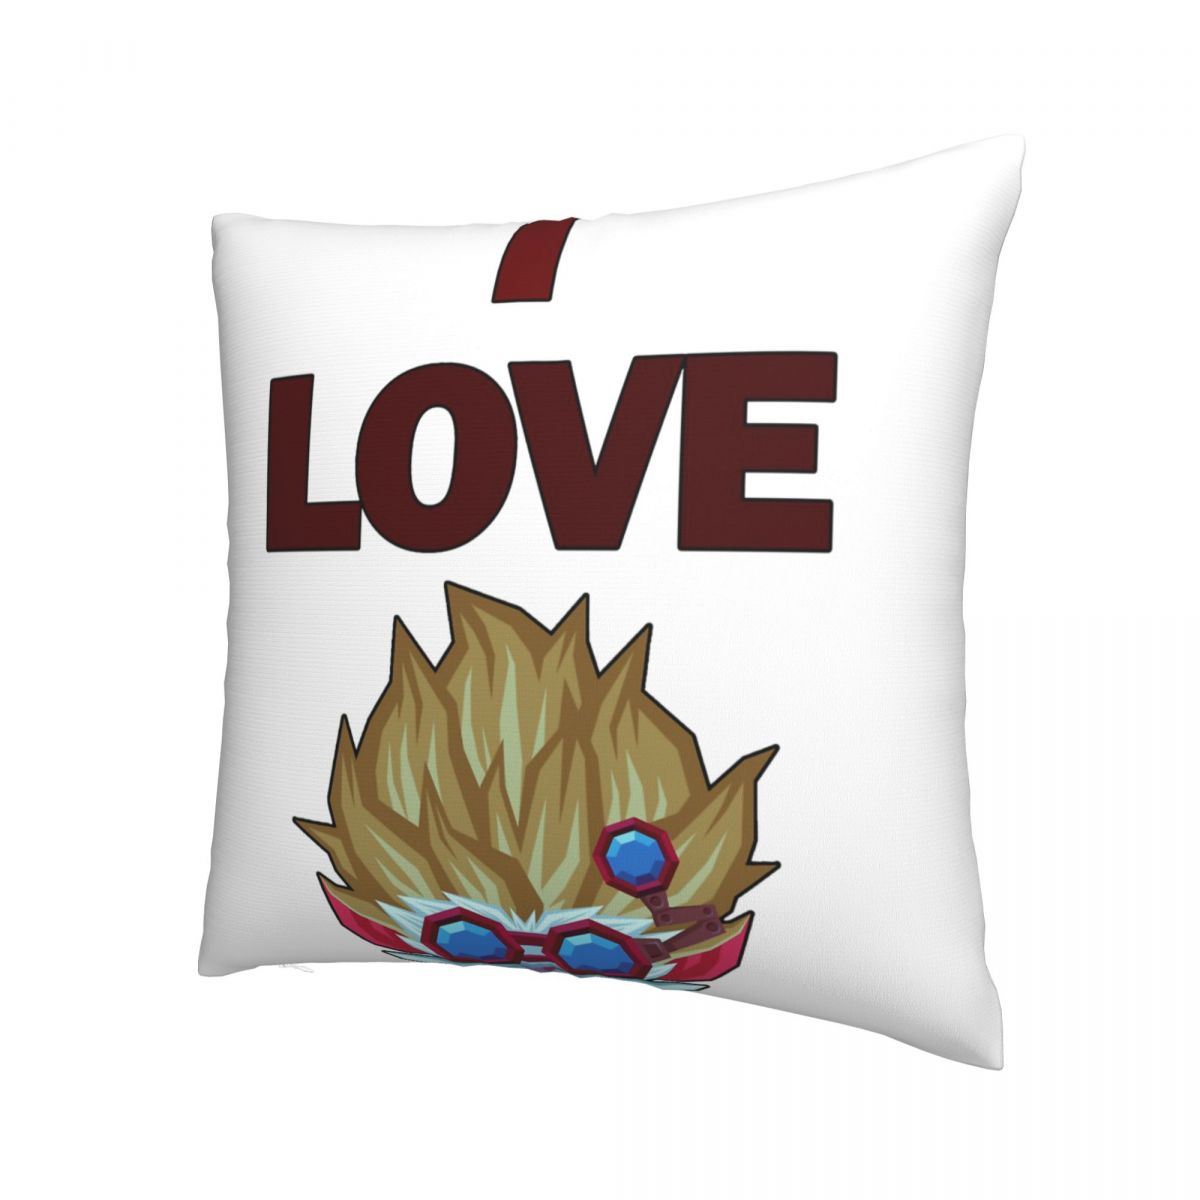 I Love Heimerdinger Throw Pillow Case - League of Legends Fan Store